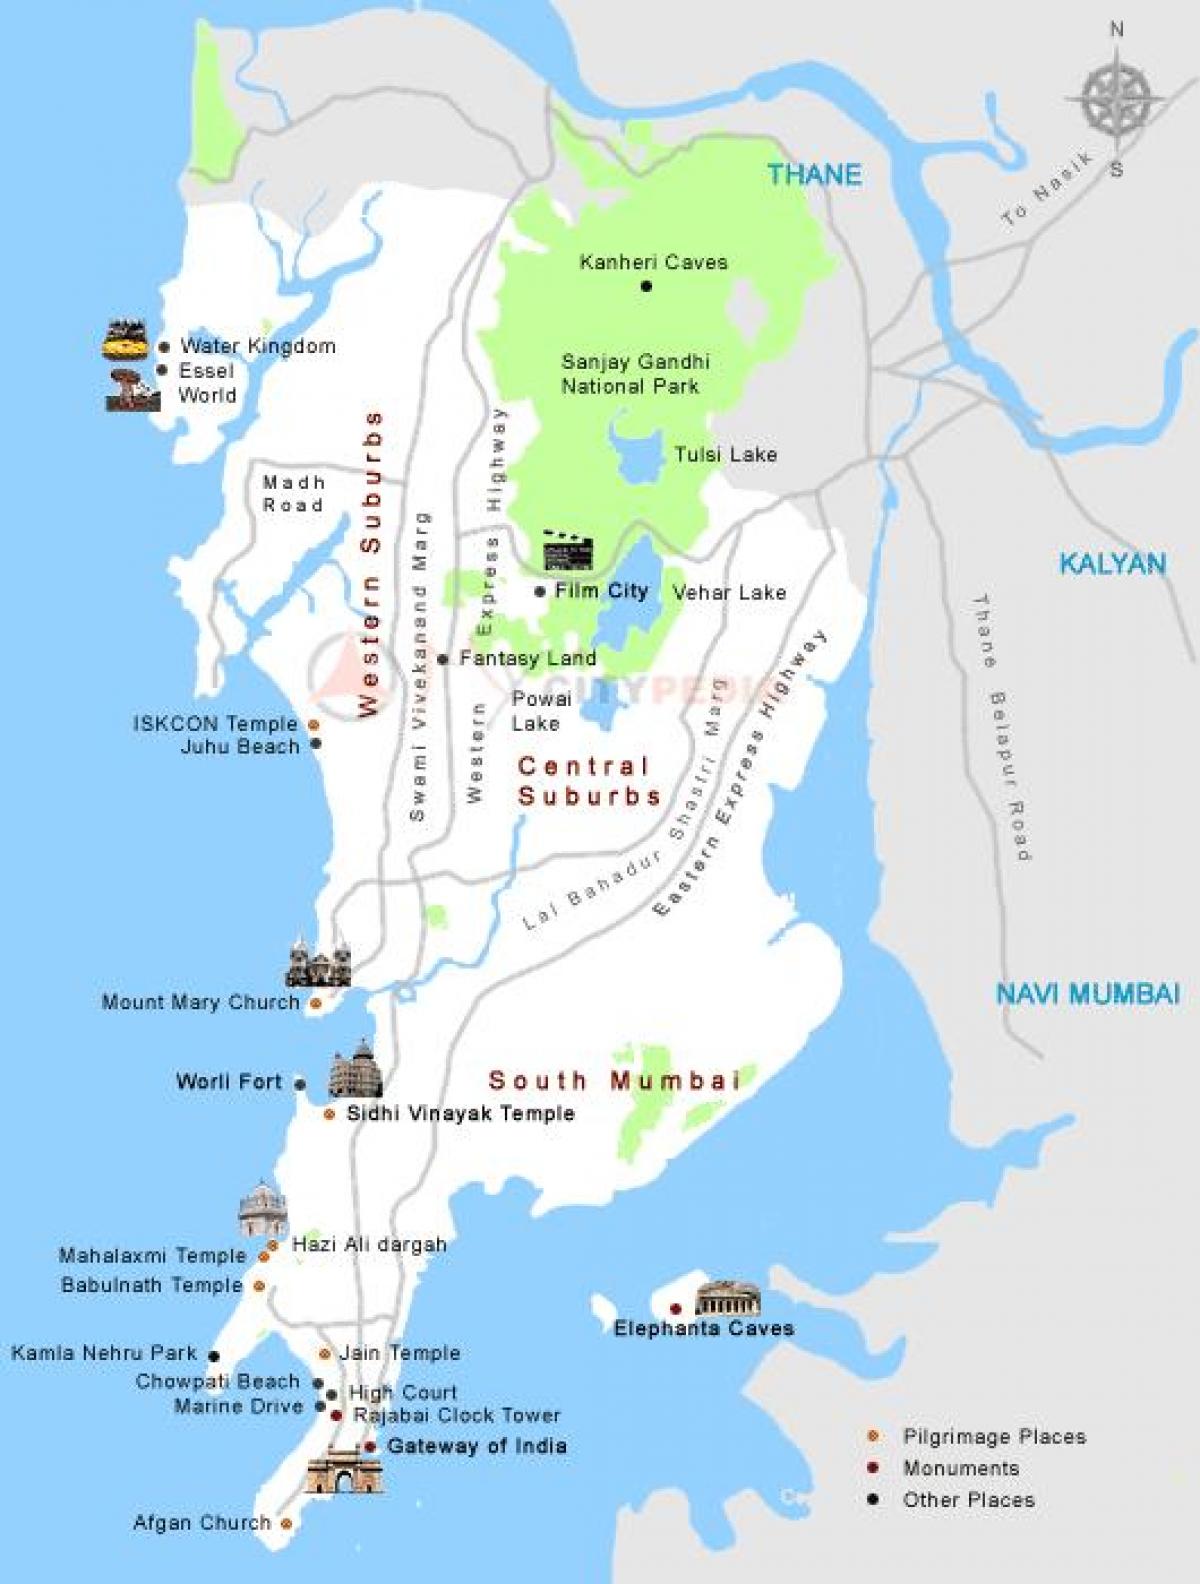 mapa Mumbai turismo lekuak